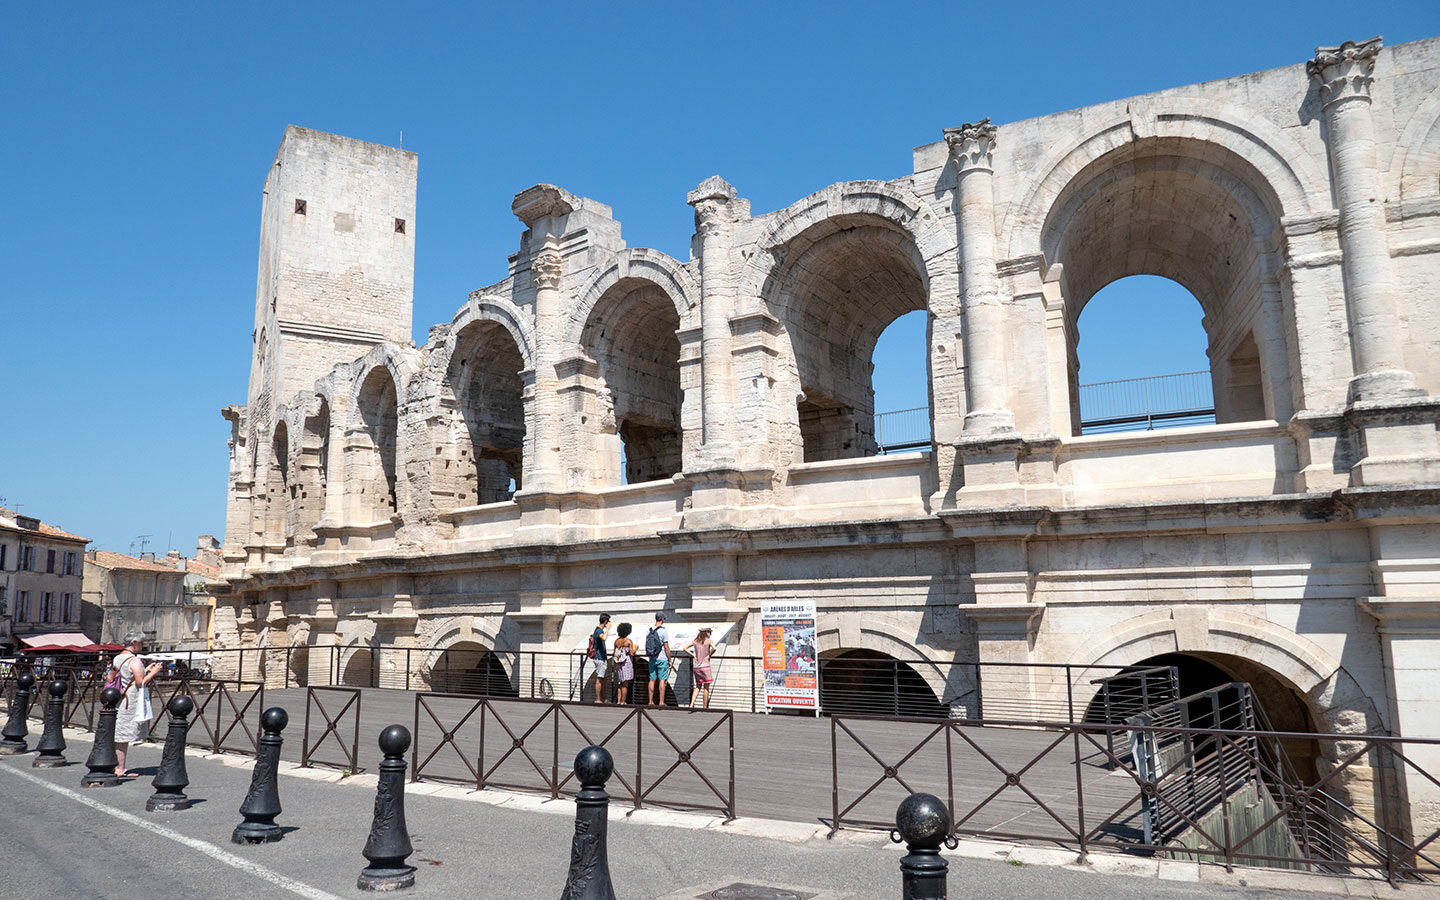 Les Arènes Roman amphitheatre in Arles